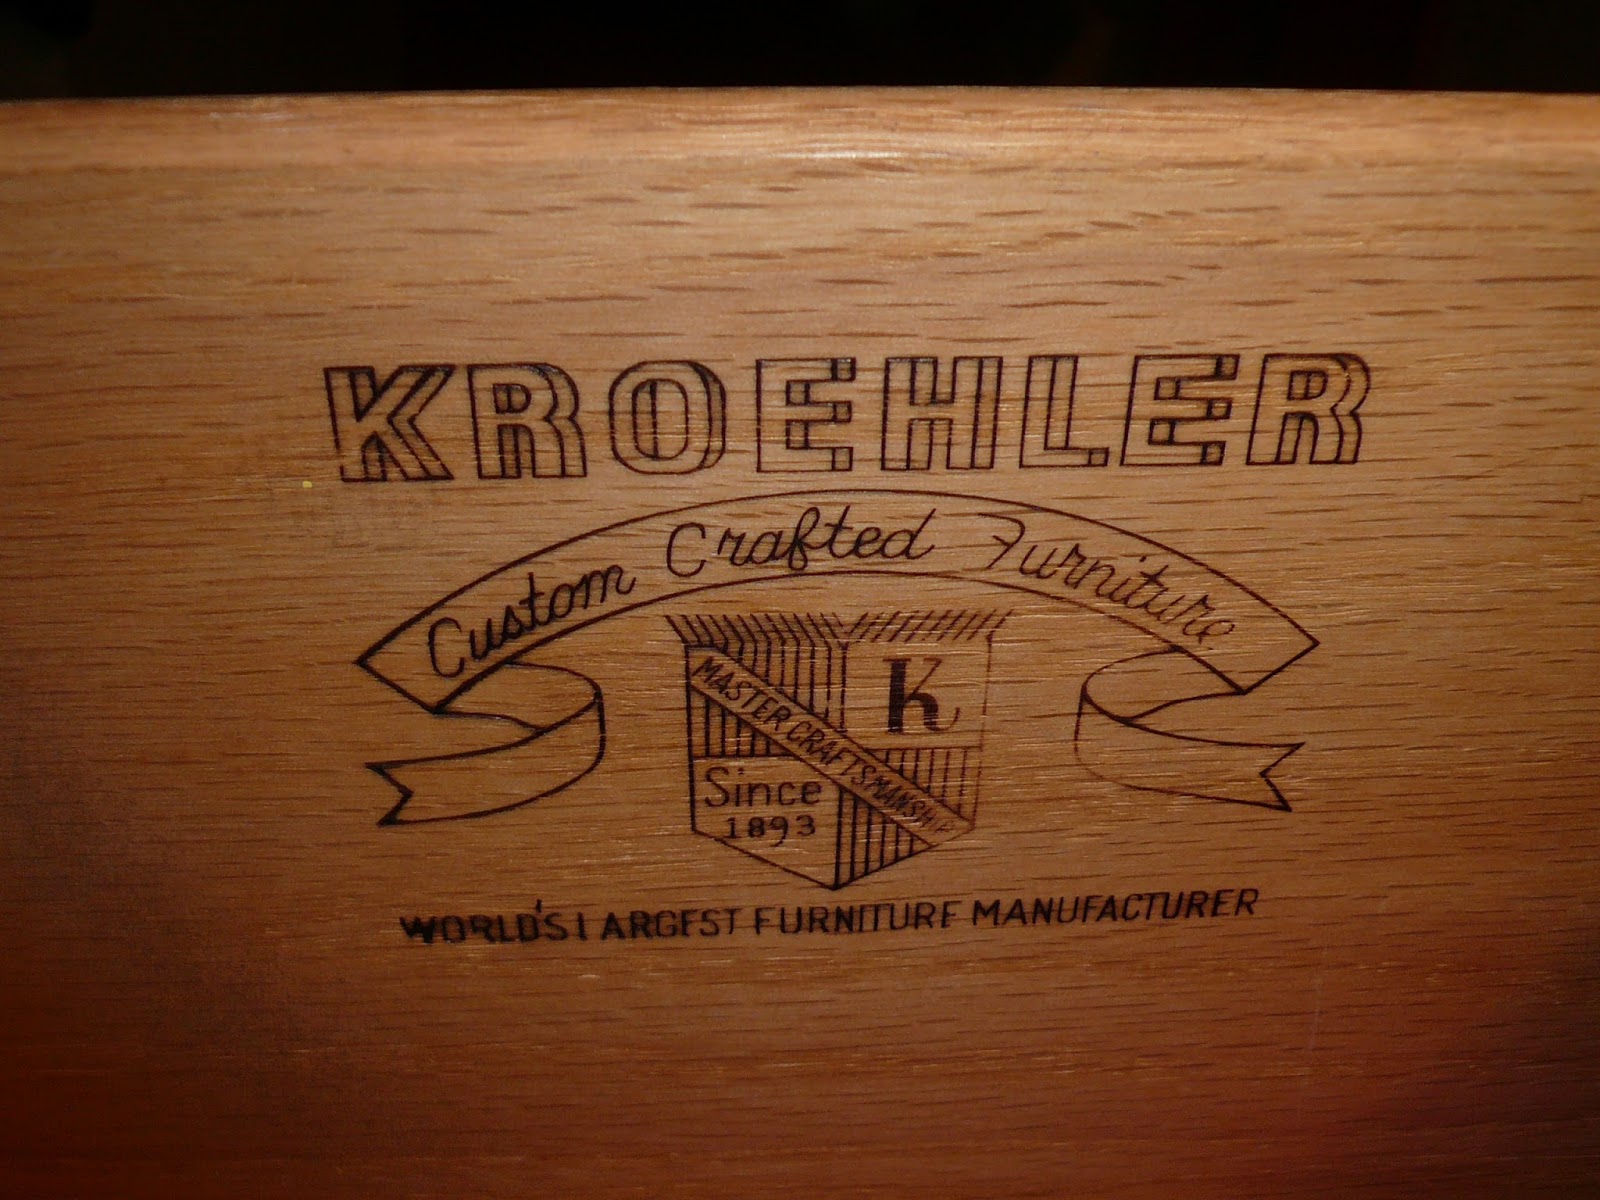 What kinds of furniture does Kroehler make?